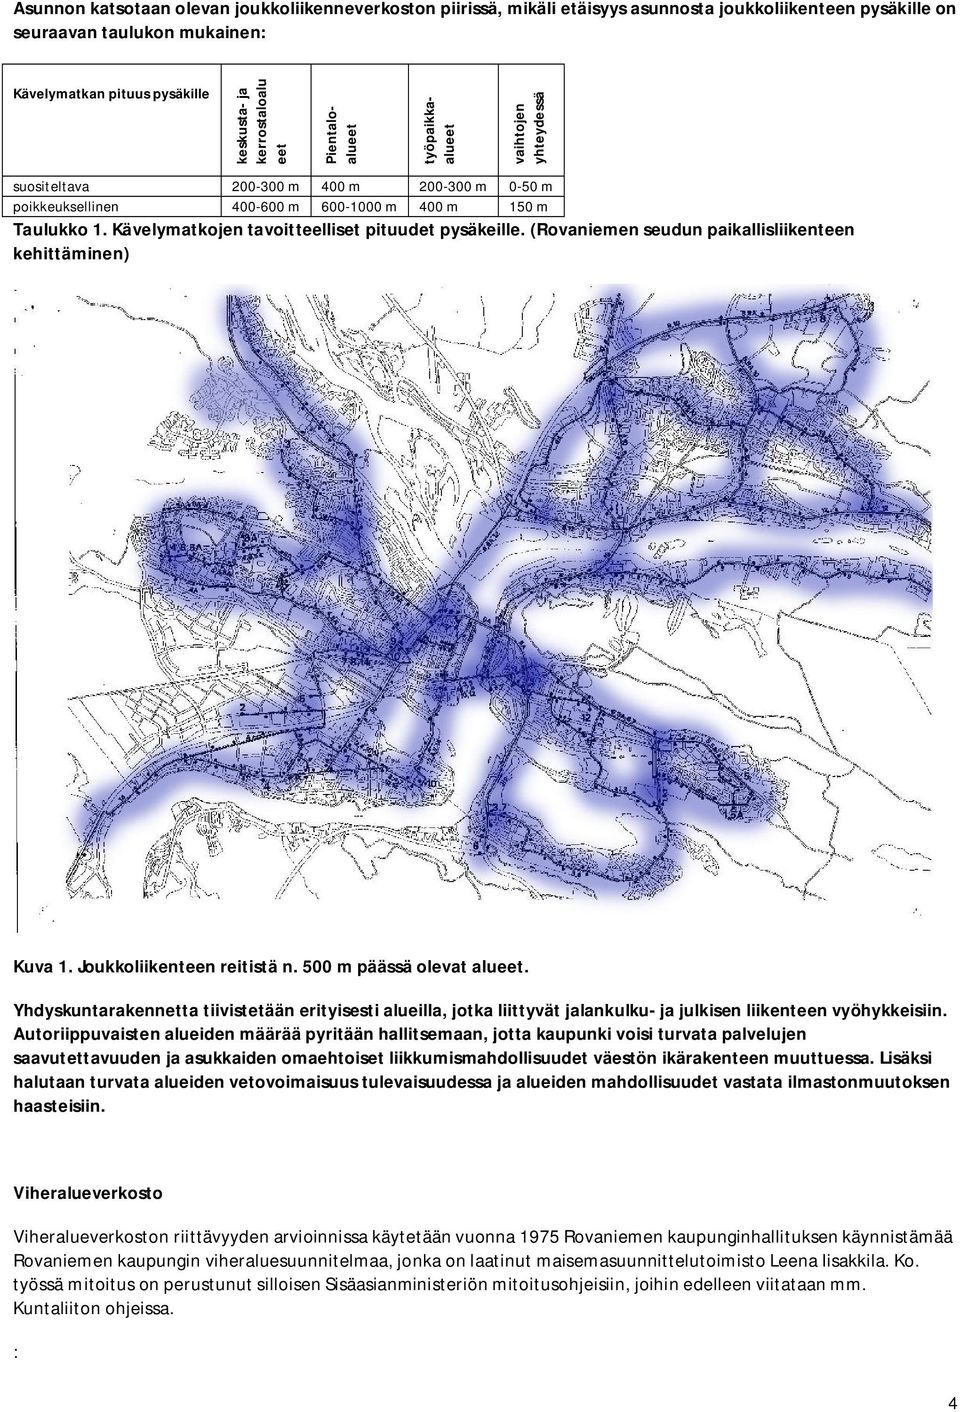 Kävelymatkojen tavoitteelliset pituudet pysäkeille. (Rovaniemen seudun paikallisliikenteen kehittäminen) Kuva 1. Joukkoliikenteen reitistä n. 500 m päässä olevat alueet.